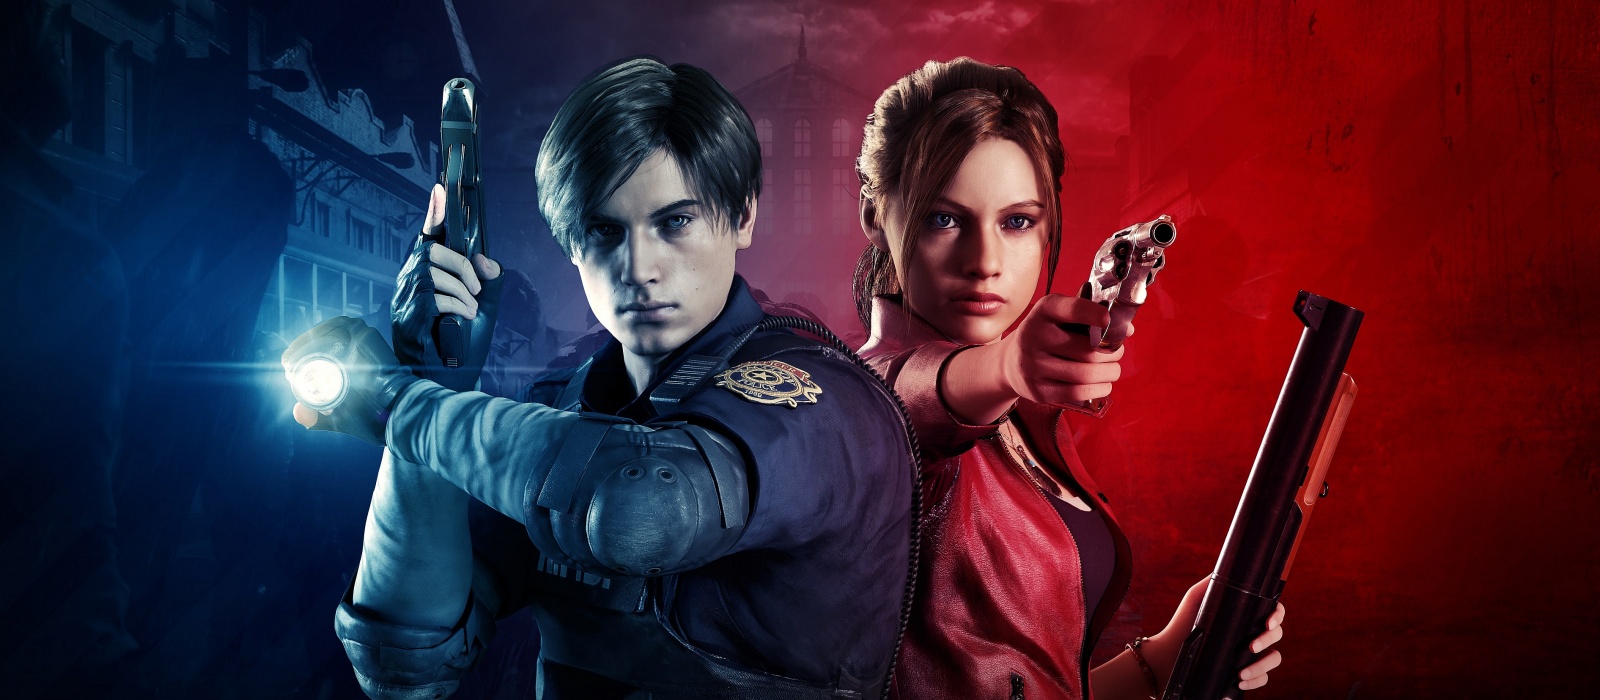 Художник показал, как герои Resident Evil могут выглядеть в новом фильме